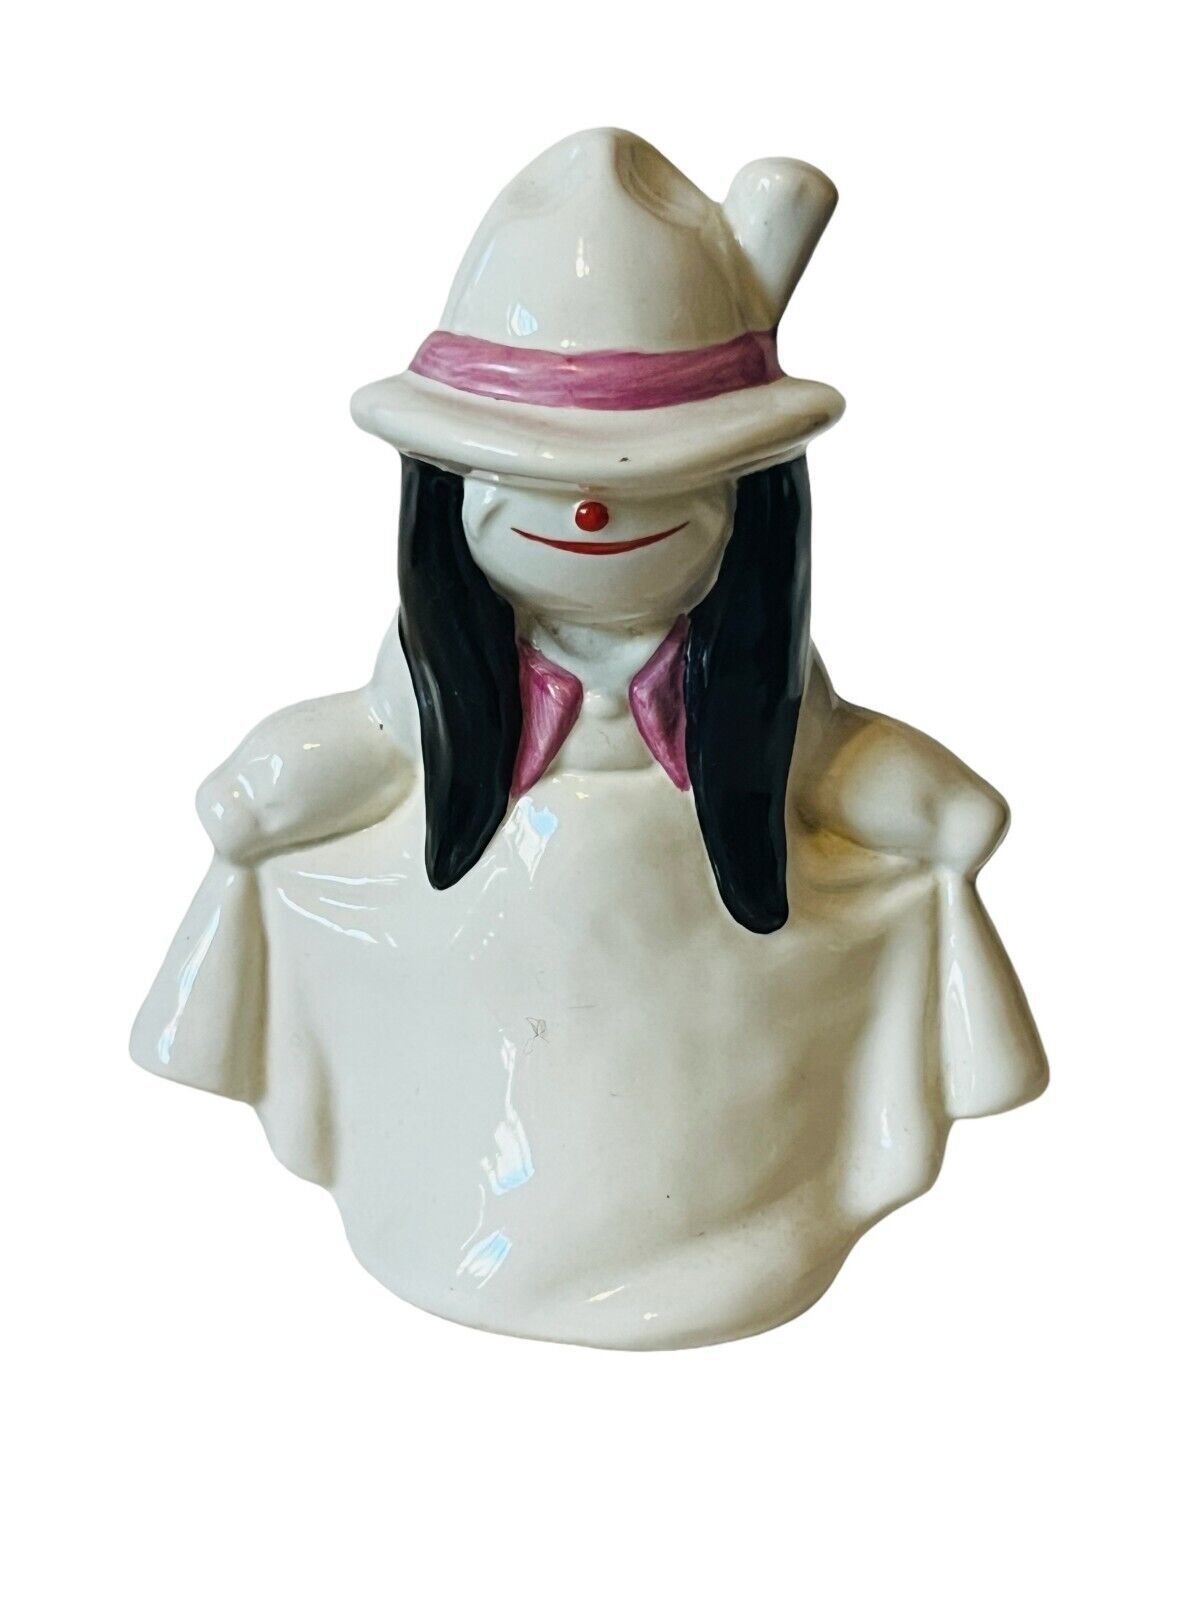 Primary image for Hummel Goebel Figurine porcelain Germany 1170810 Clown Mime Homies Jester vtg